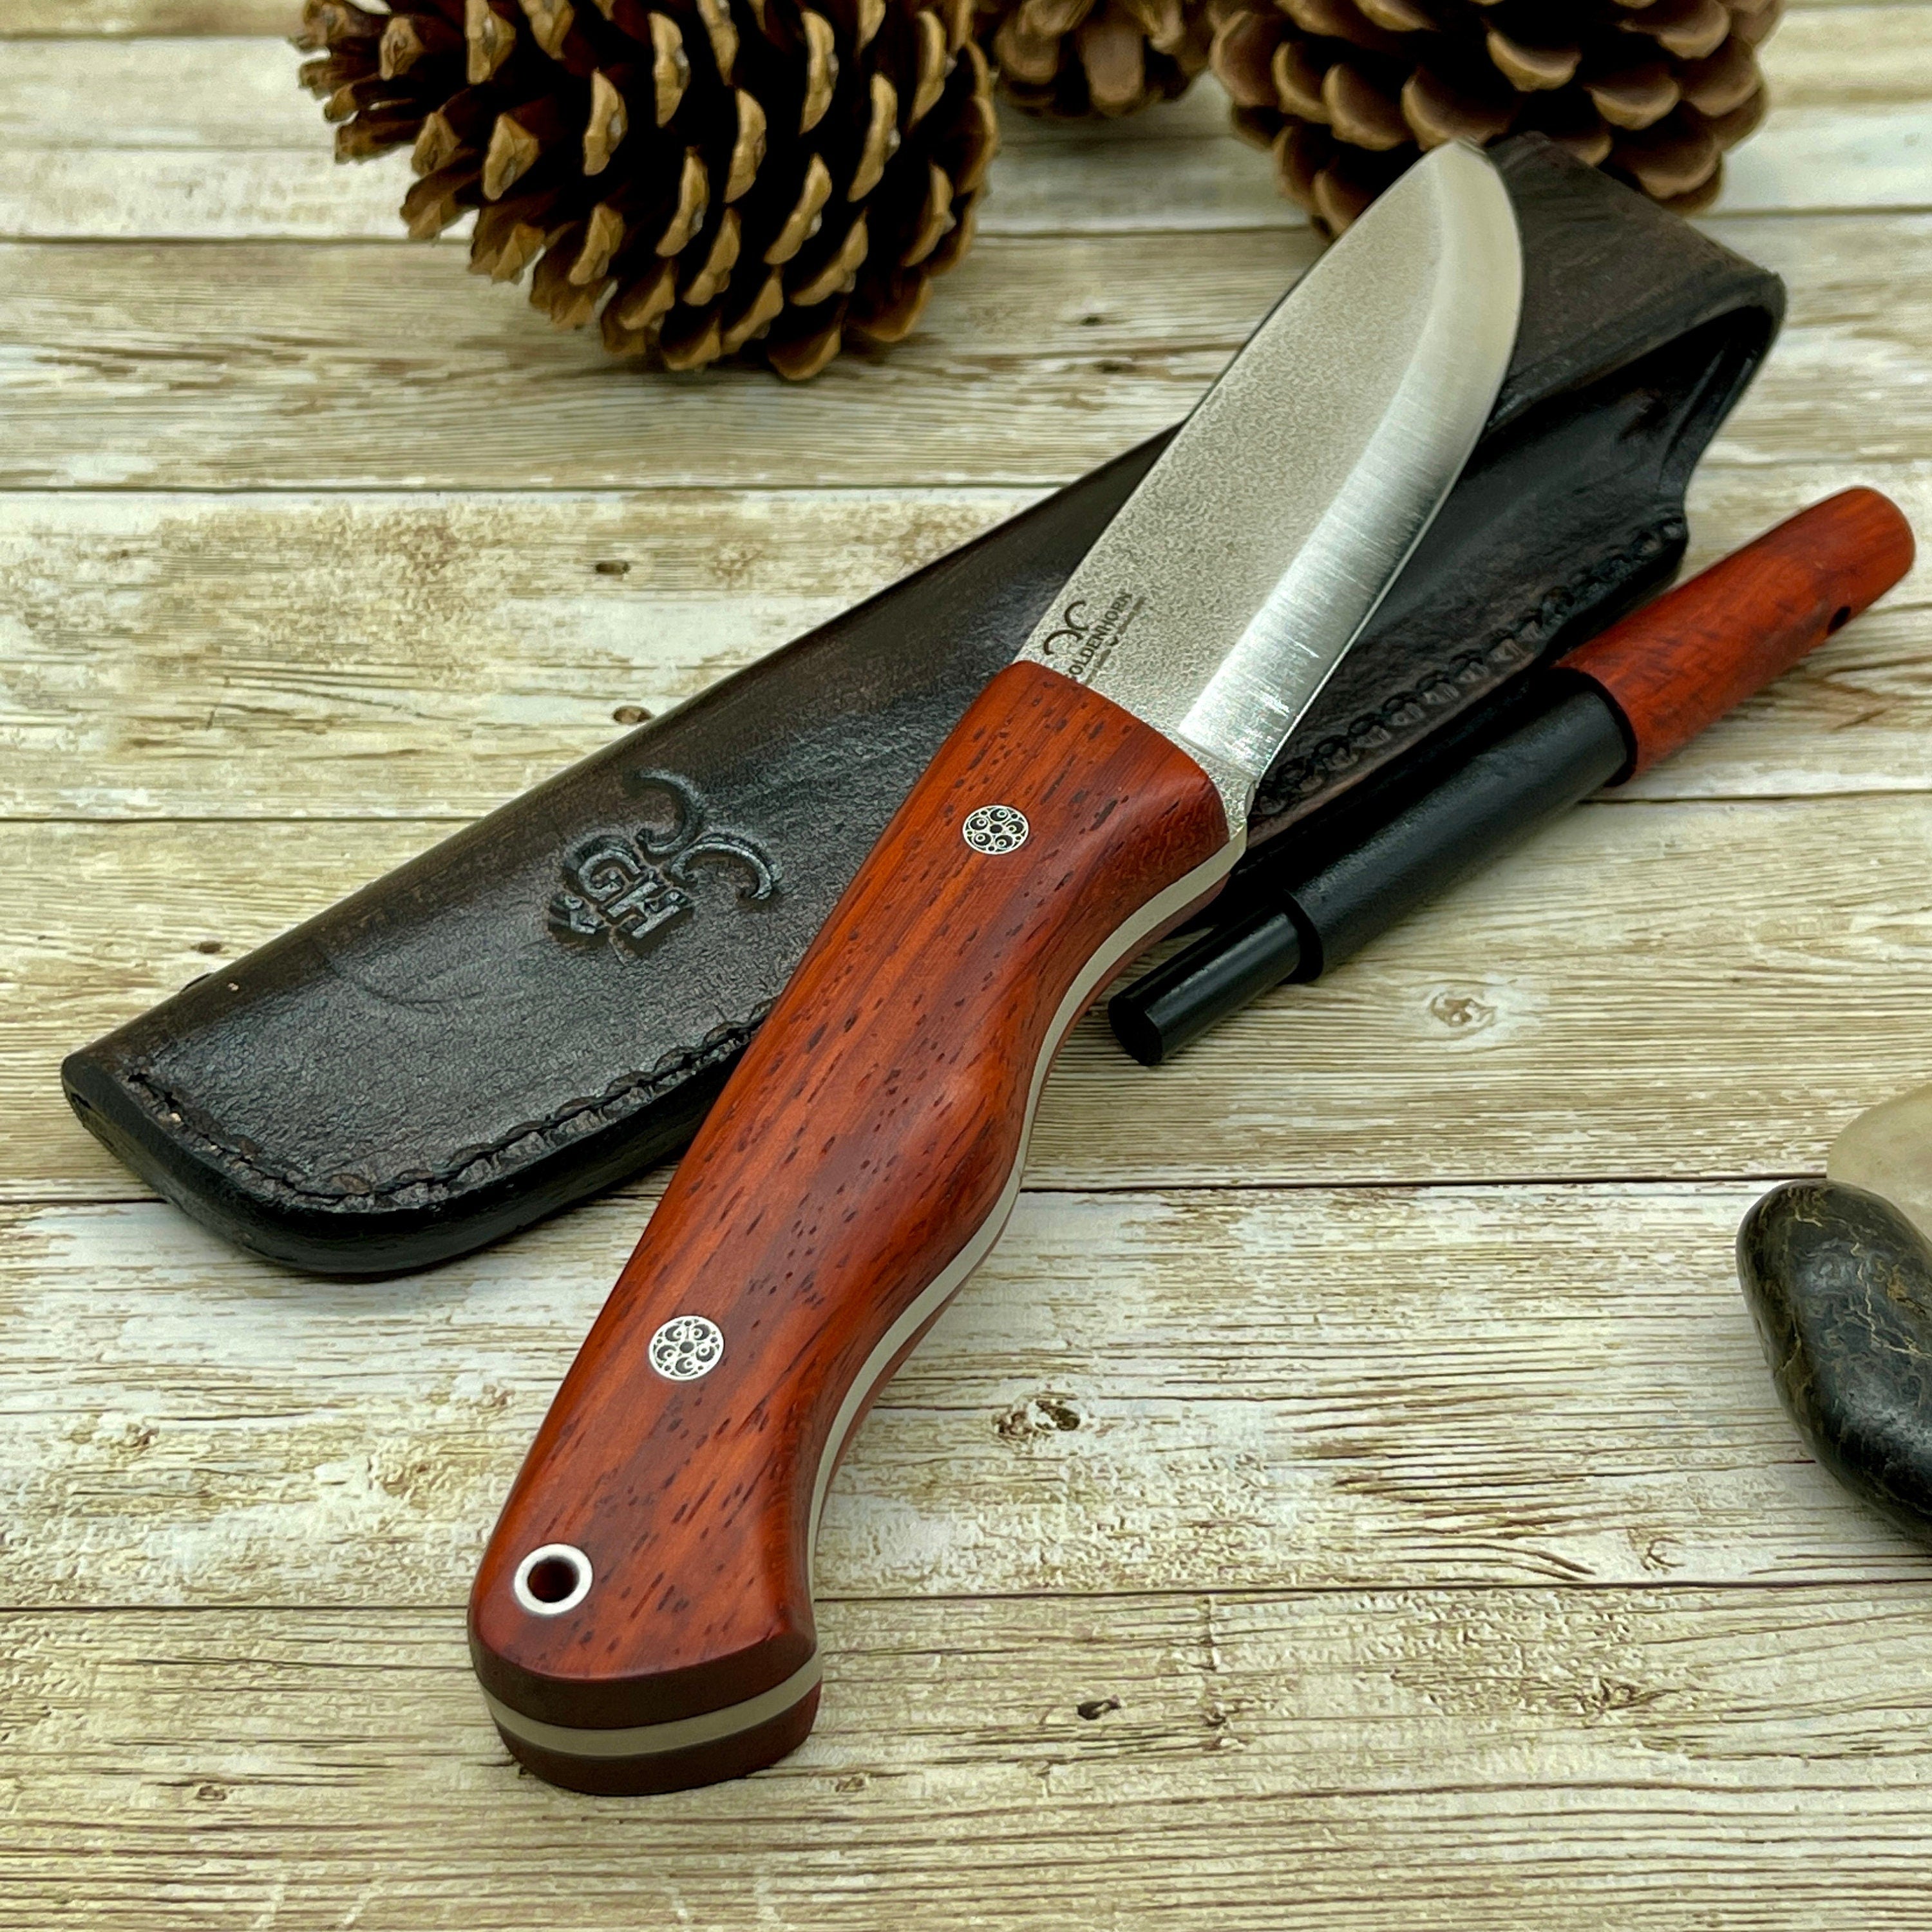 Skinner Knife With Gut Hook, Skinning Knife N690 Bohler Steel, Skinner With  Sheath, Gut Hook Blades, Hunter Knife, Camper Knife 